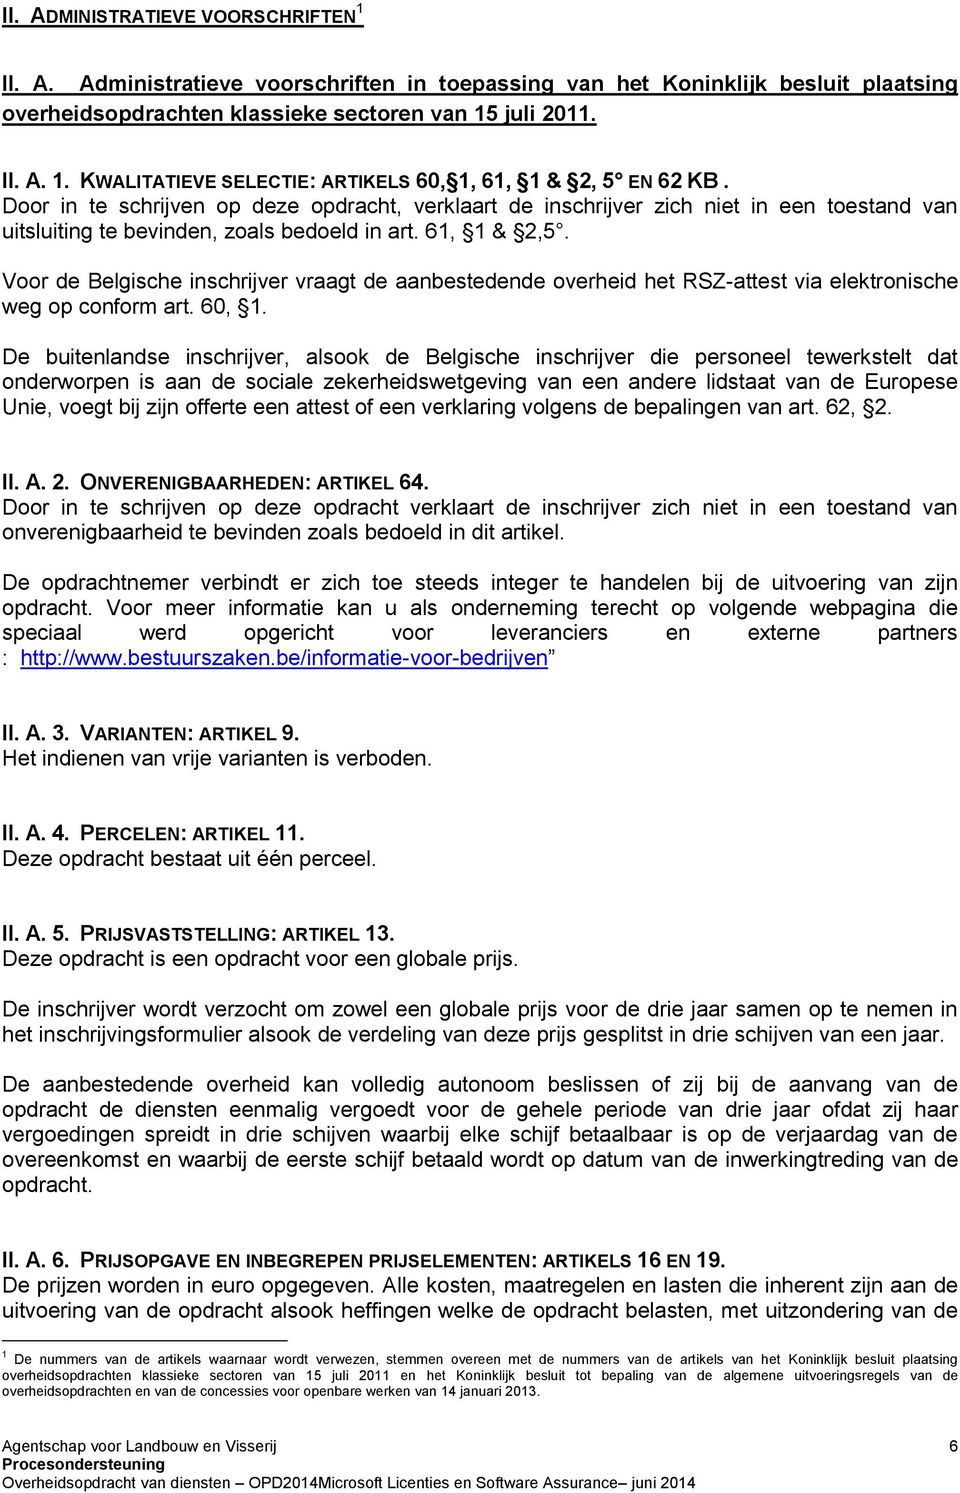 Voor de Belgische inschrijver vraagt de aanbestedende overheid het RSZ-attest via elektronische weg op conform art. 60, 1.